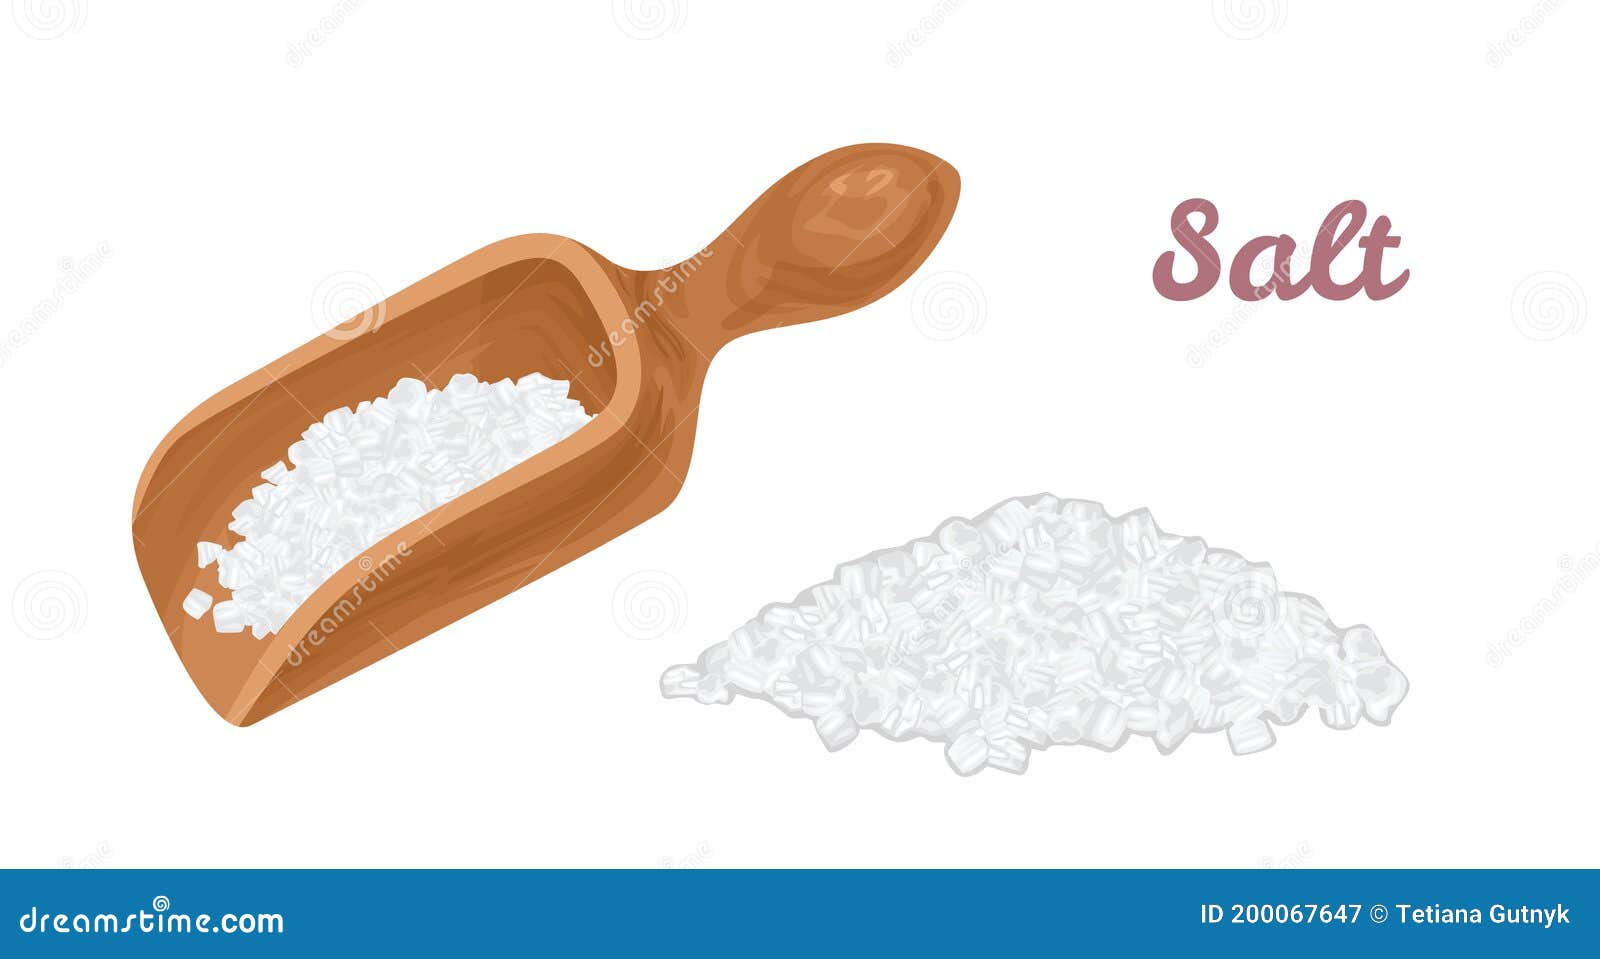 salt in wooden scoop and  pile of salt 